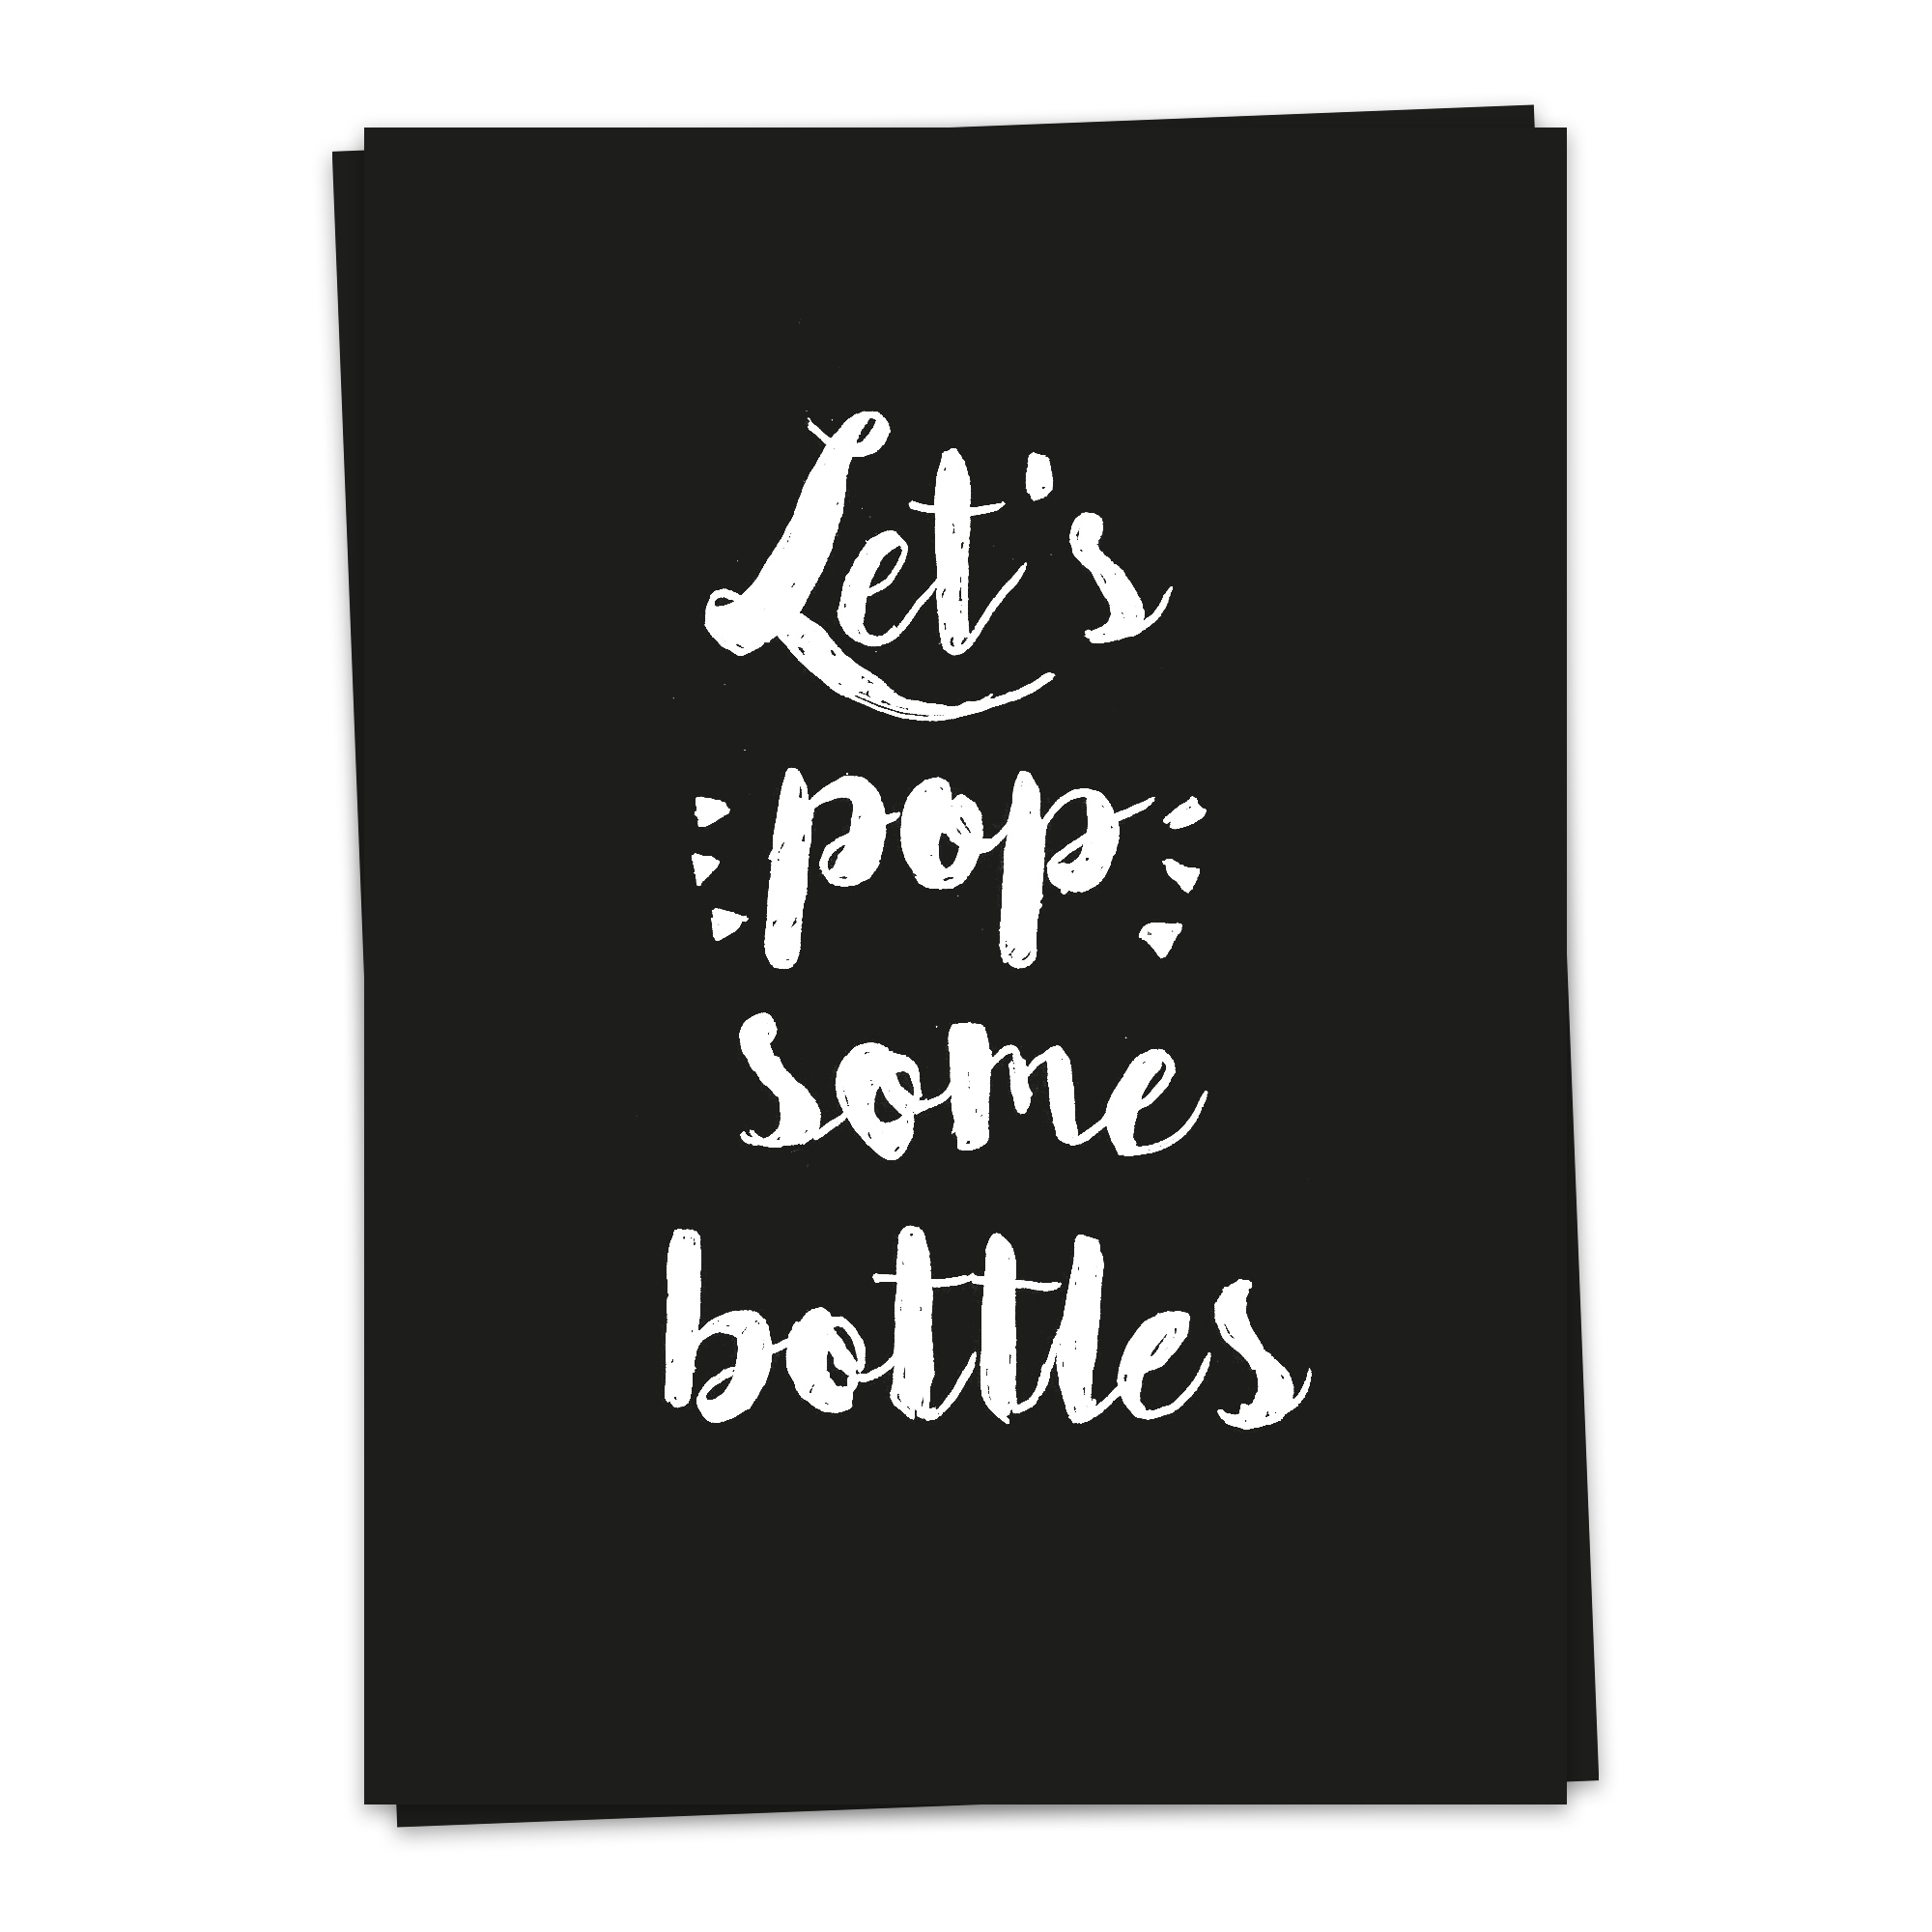 Basics – POP some bottles